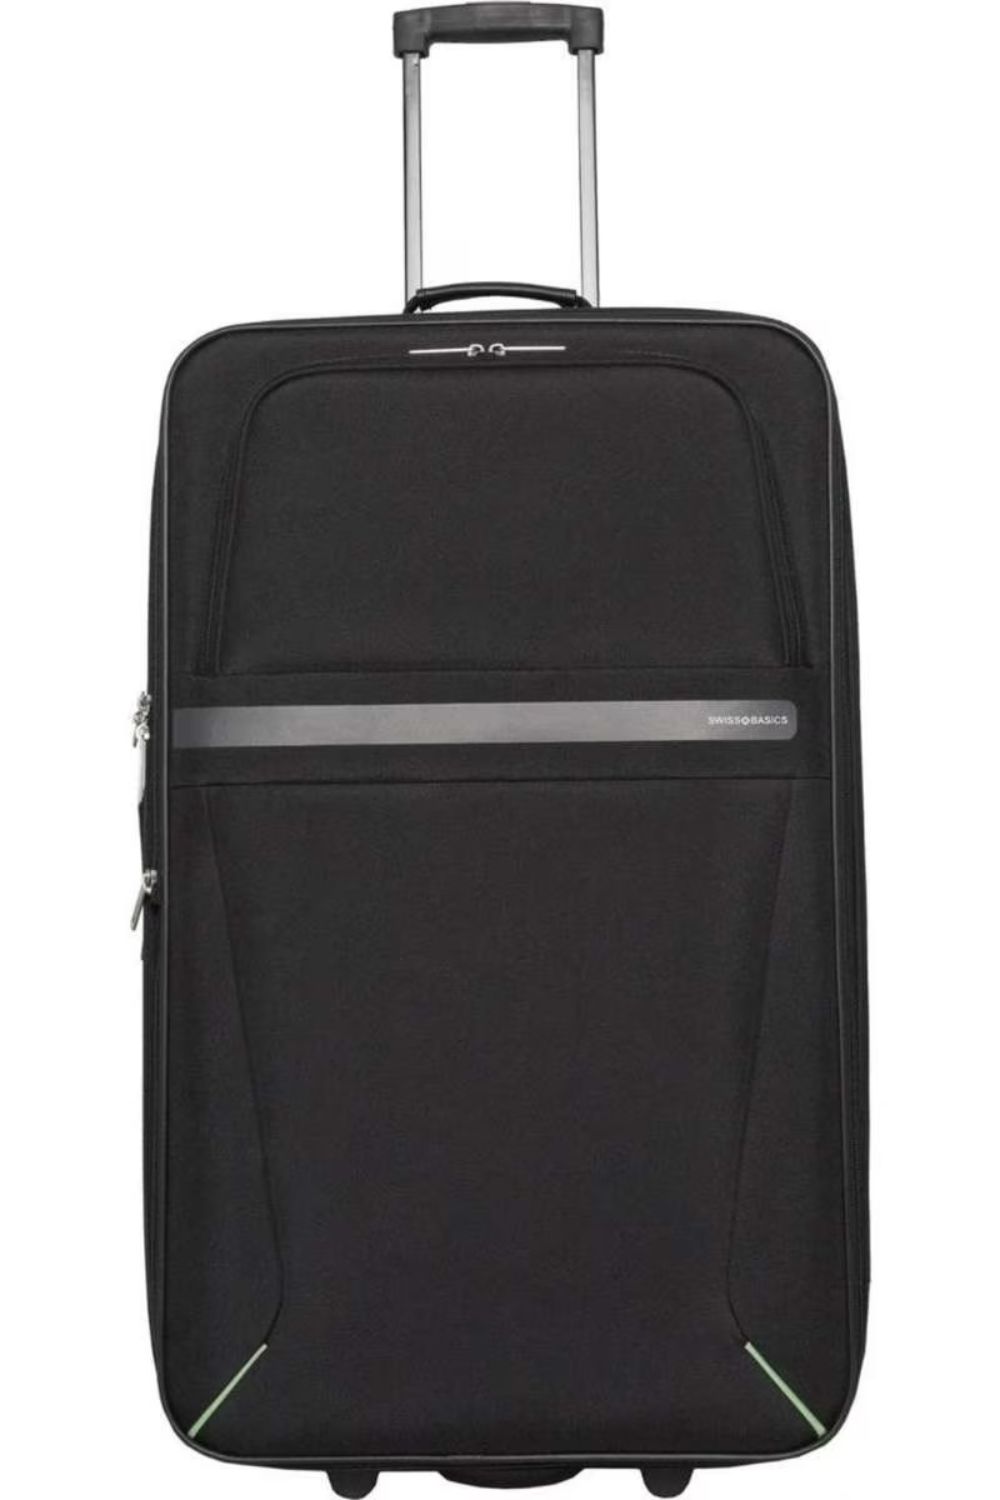 swiss-basic-roma-black-carry-on-luggage